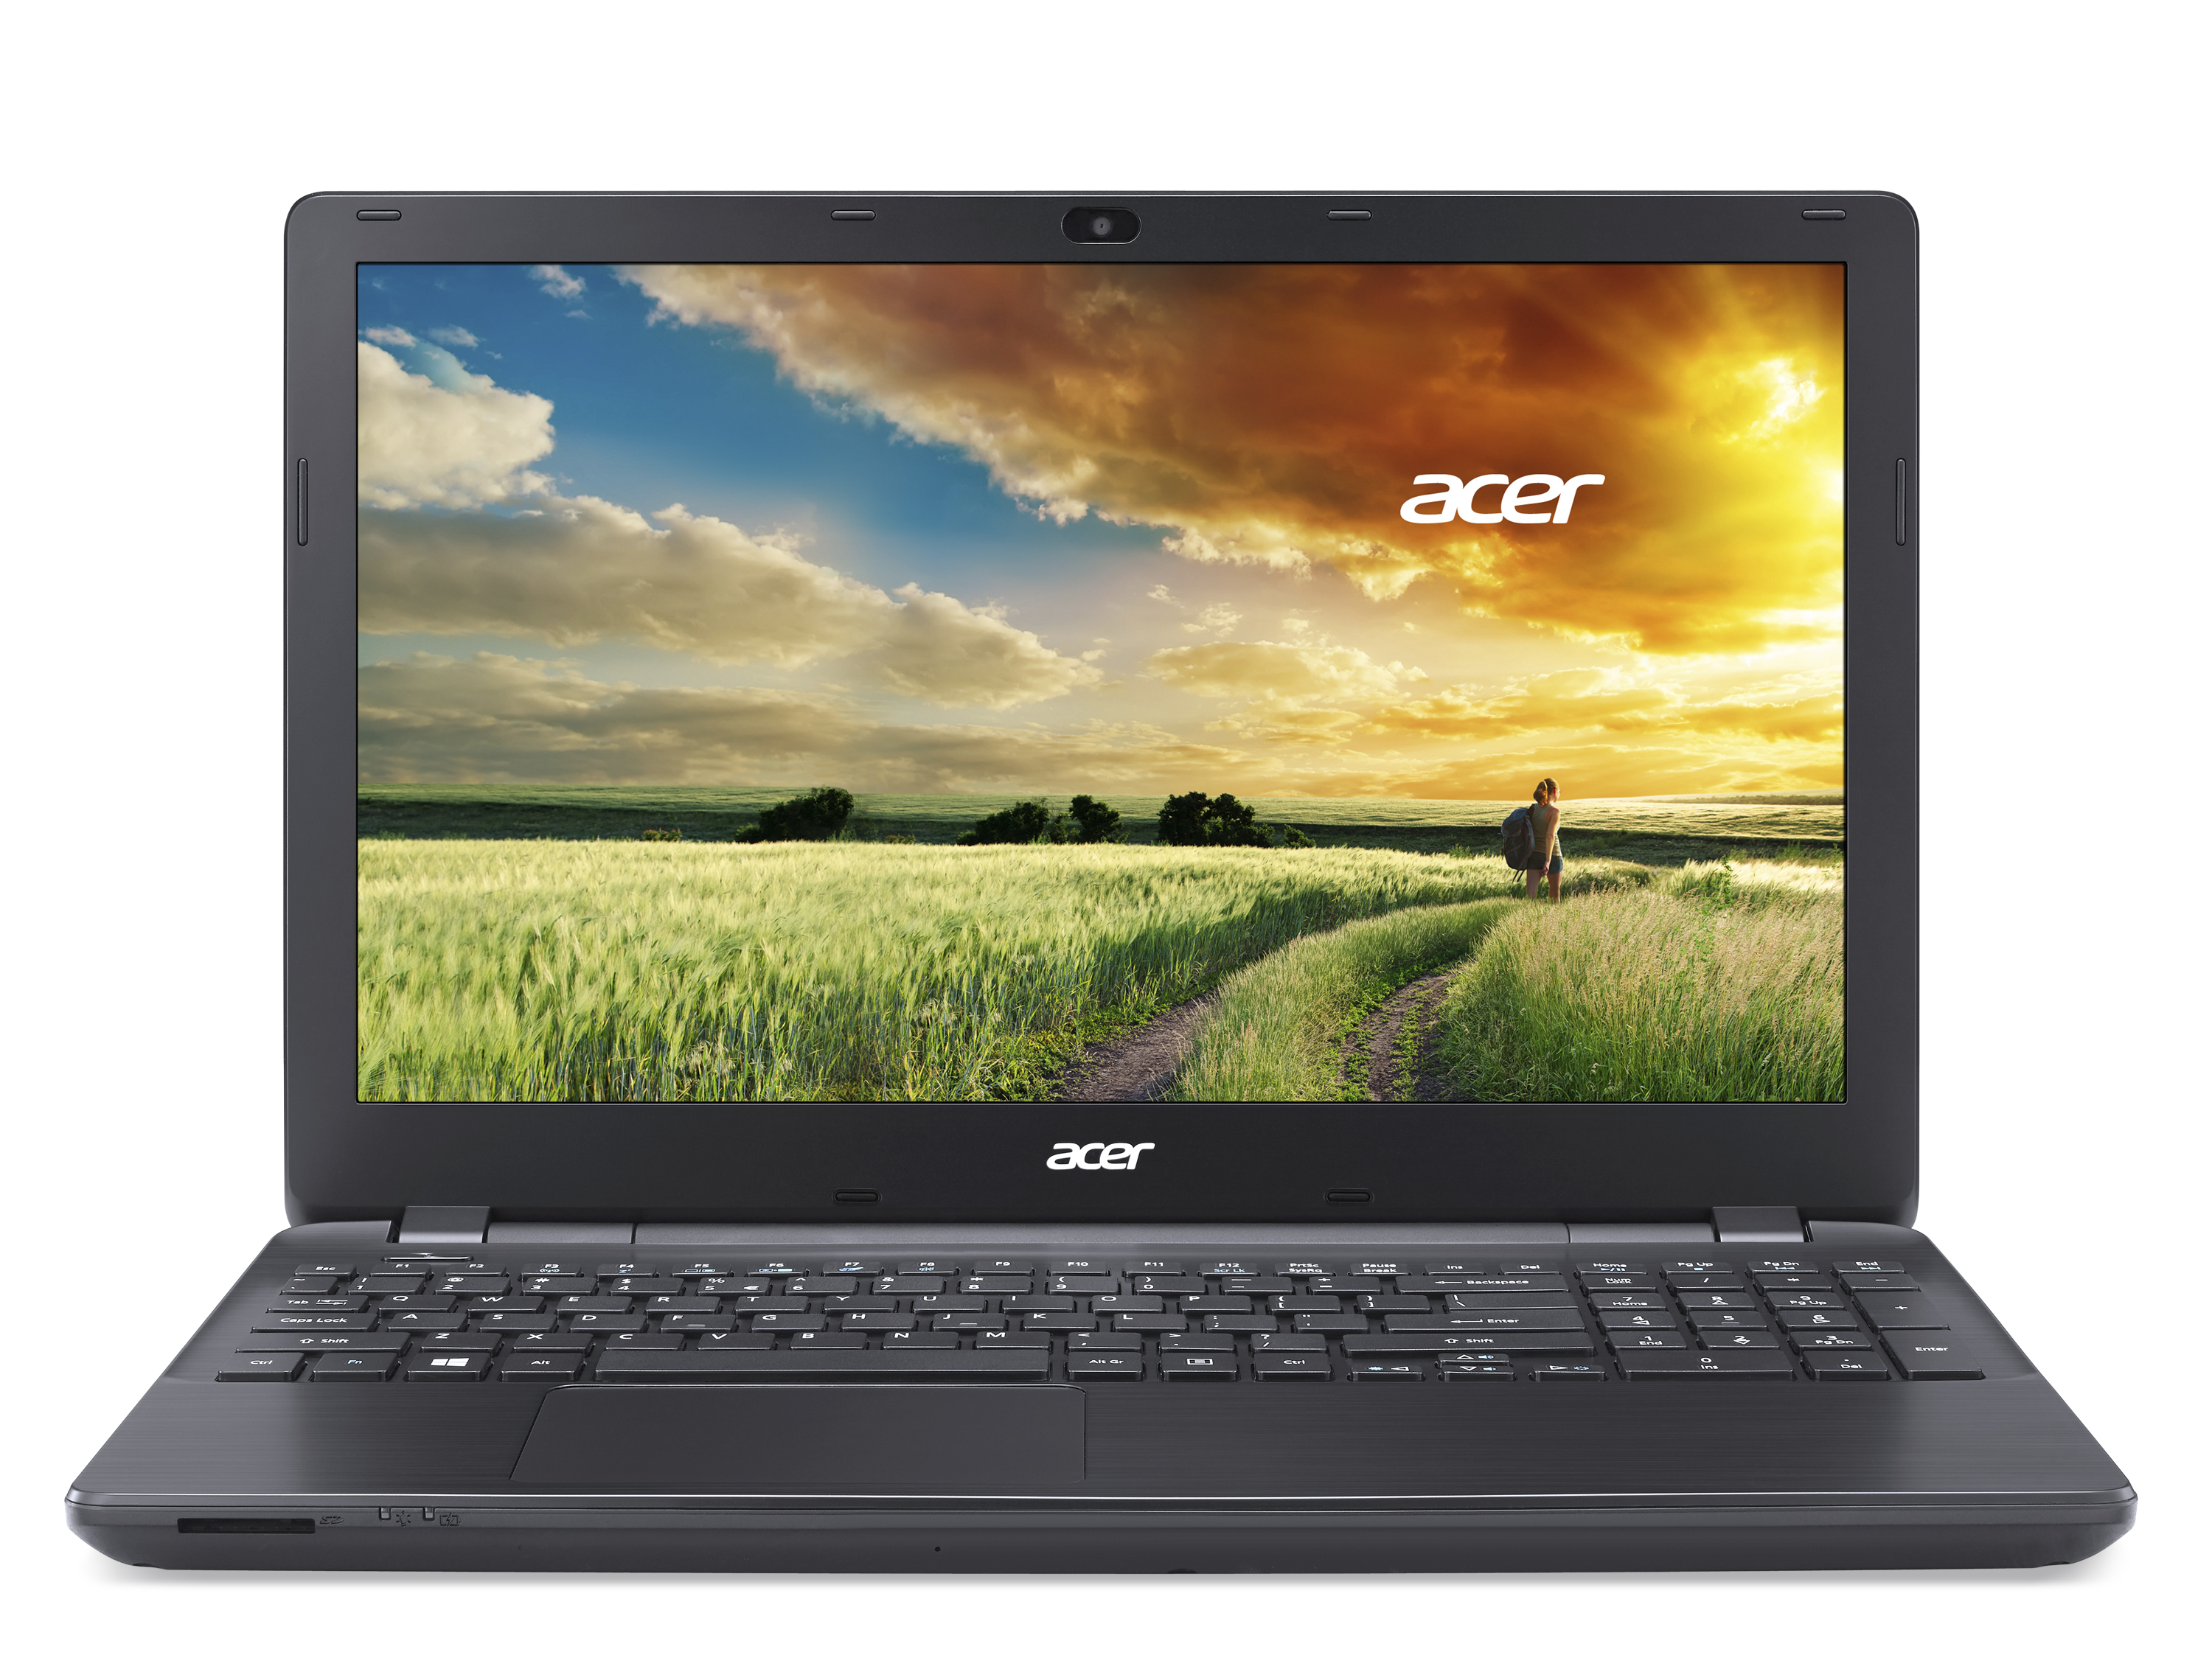 Acer Aspire E5-572G-39PZ